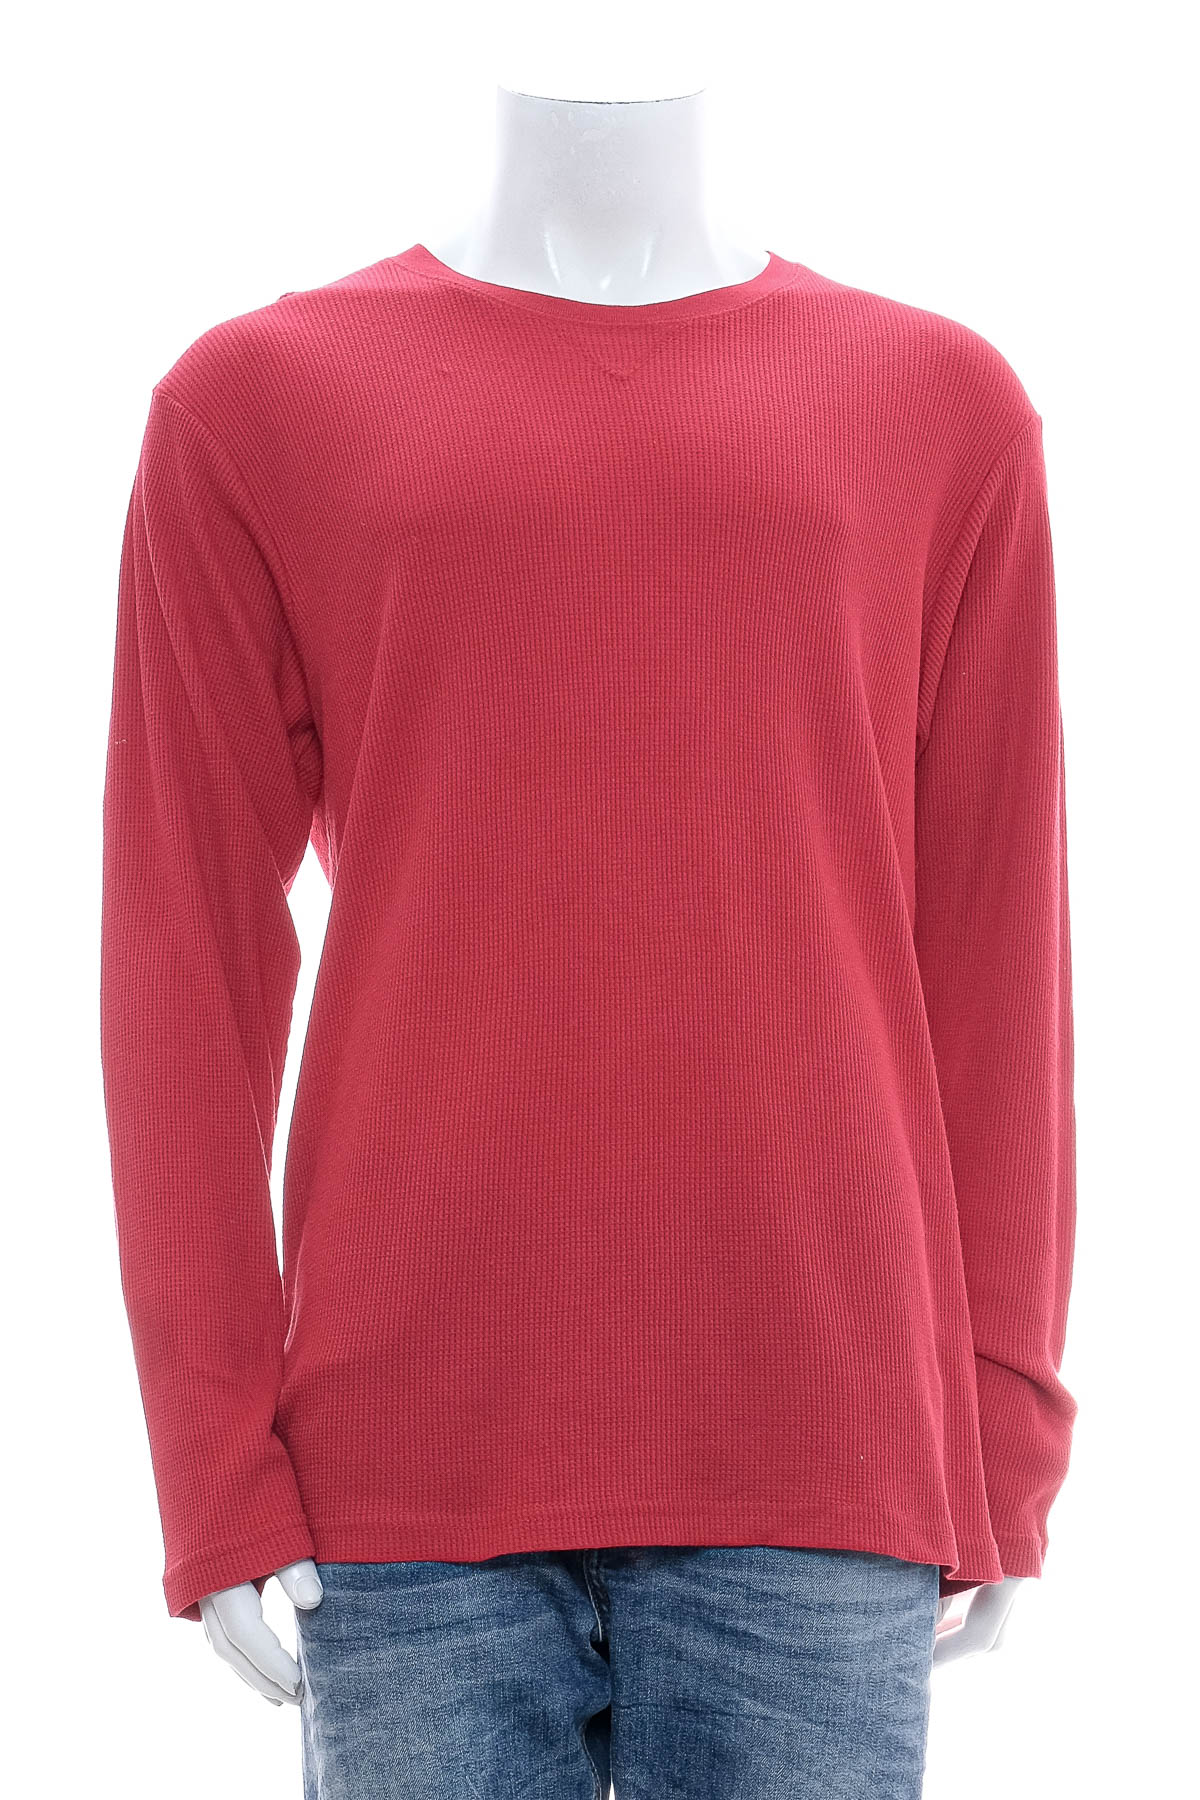 Men's sweater - SADDLEBRED - 0